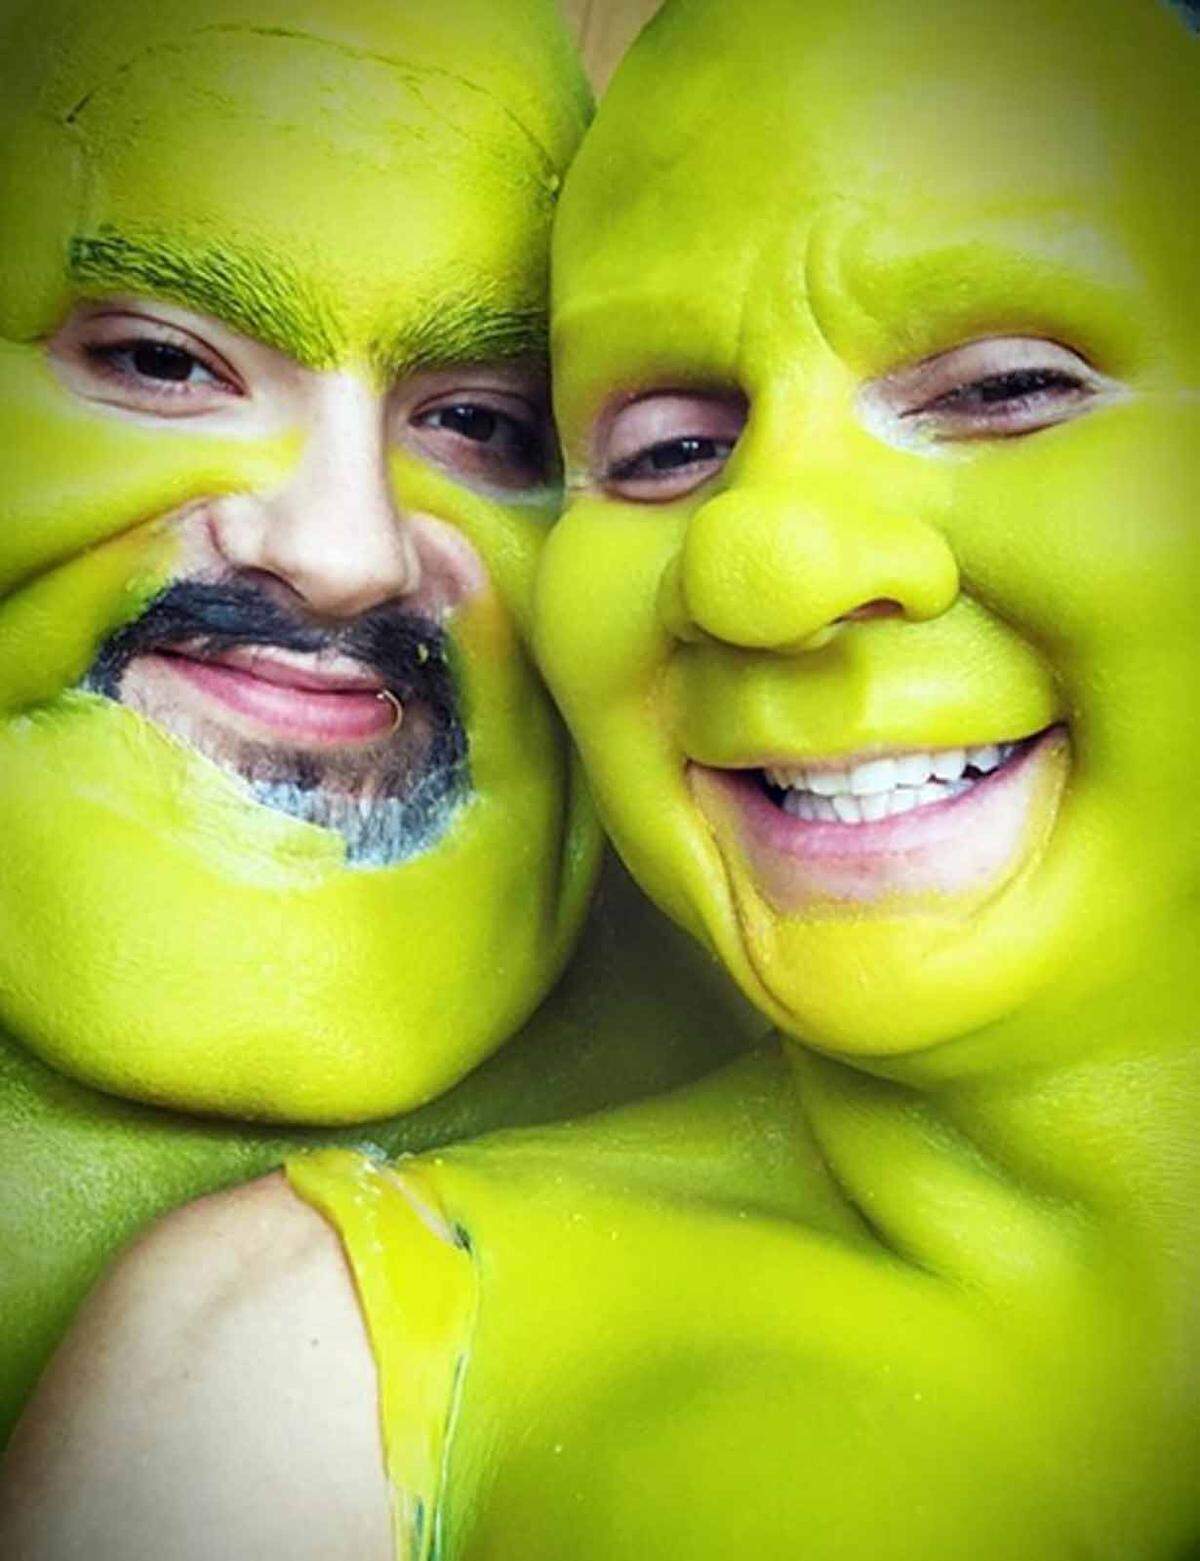 Seit 2000 veranstaltet Heidi Klum jedes Jahr am 31. Oktober in New York eine riesige Halloween-Party, die unter den Promis Kultstatus genießt. Im Mittelpunkt: Heidis ausgefallene Kostüme. 2018 verwandelte sie sich zusammen mit ihrem Freund Tom Kaulitz in das Fantasy-Liebespaar Fiona und Shrek.